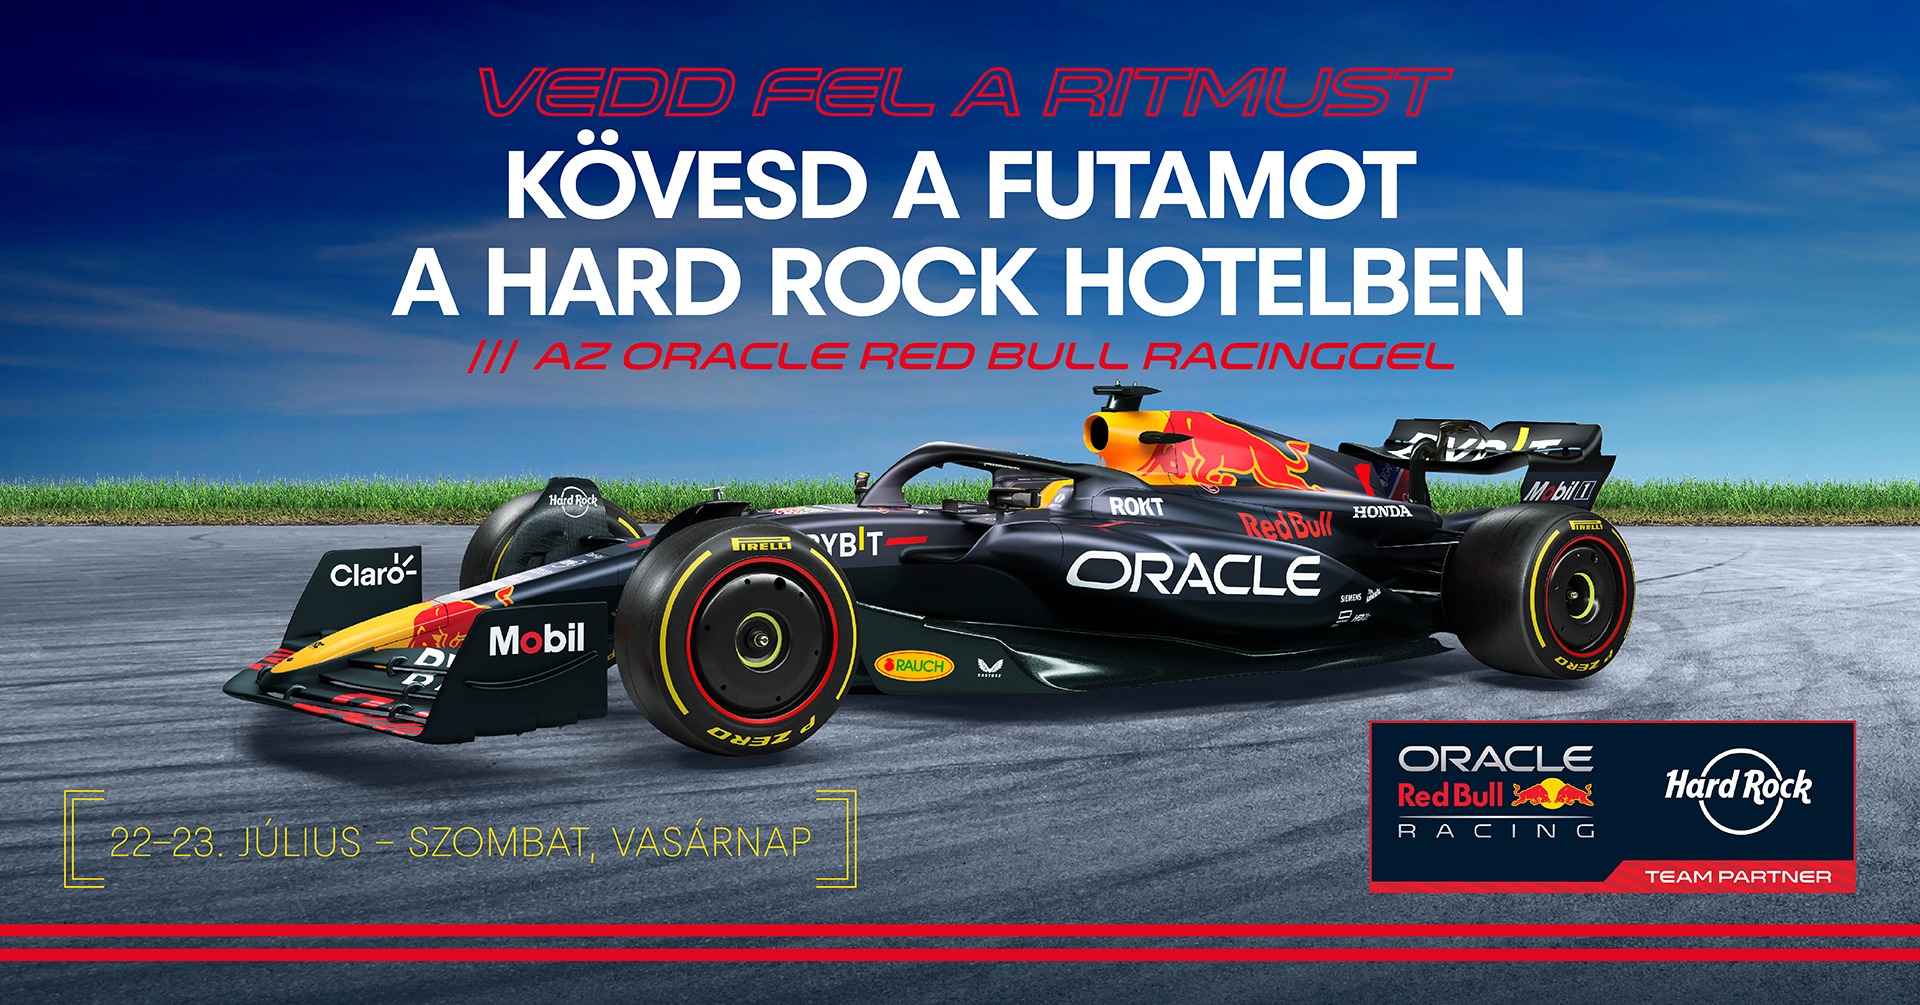 Nincs jegyed az F1-re? Nézd a futamot a budapesti hotelben!